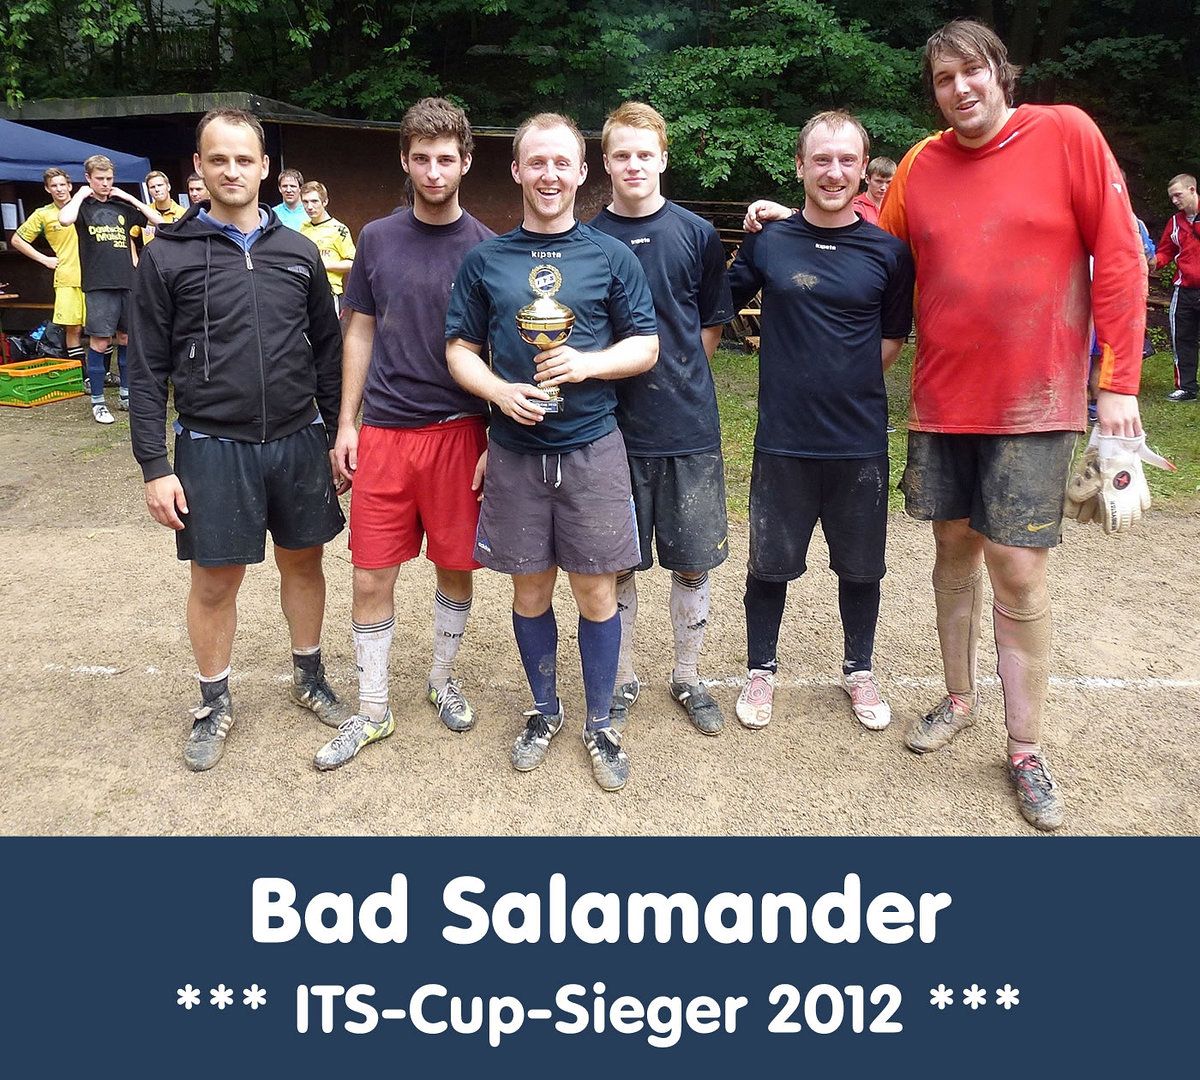 Its cup 2012   its cup sieger   bad salamander retina